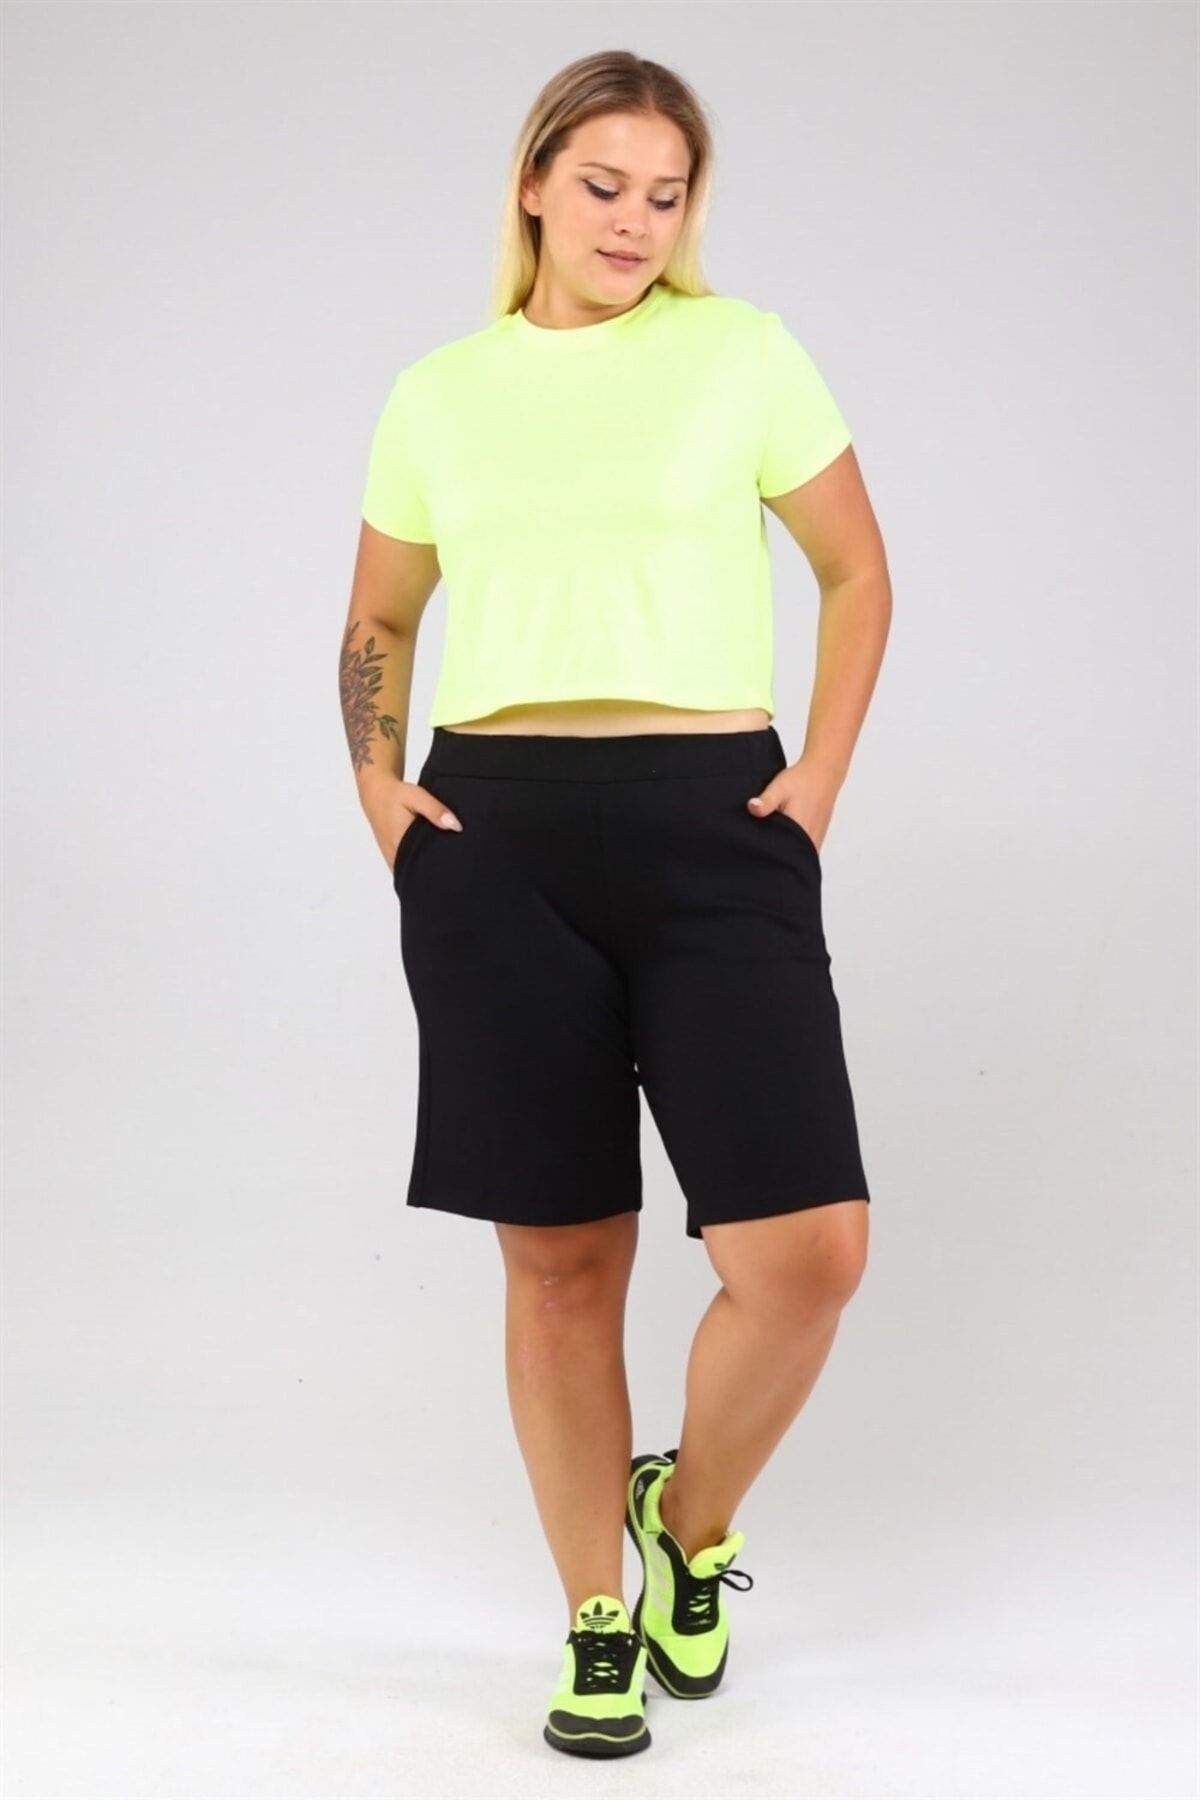 Seamoda Büyük Beden Kadın Rahat %100 Pamuk Trend Basic Crop Tshirt Spor -neon Sarı